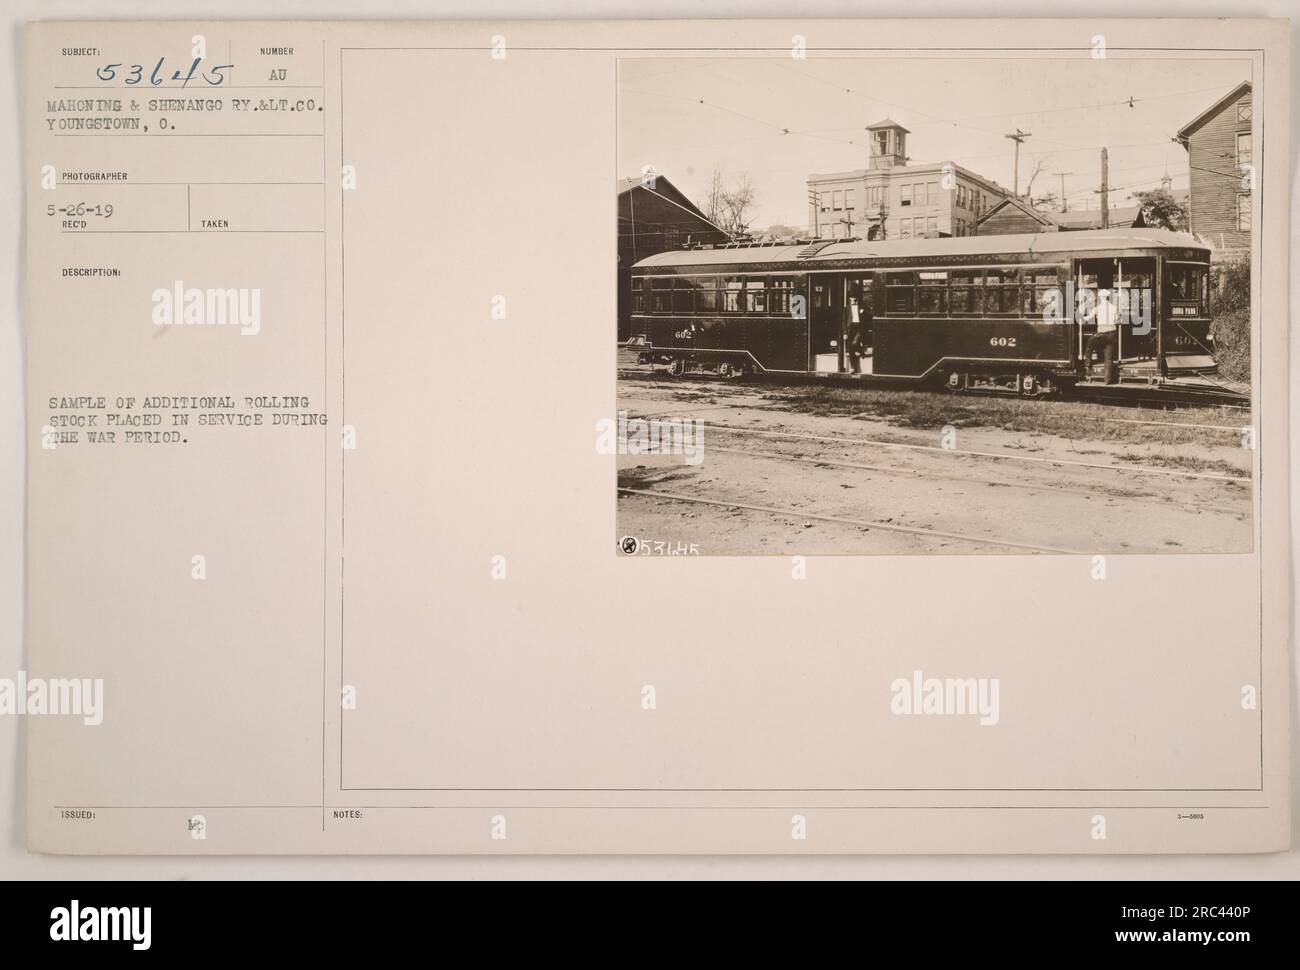 Image représentant un échantillon de matériel roulant supplémentaire mis en service par le Mahoning & Shenango Railway à Youngstown, Ohio pendant la première Guerre mondiale Photographie prise le 26 mai 1919. Photographe : McAU. Numéro de publication : 602. Banque D'Images